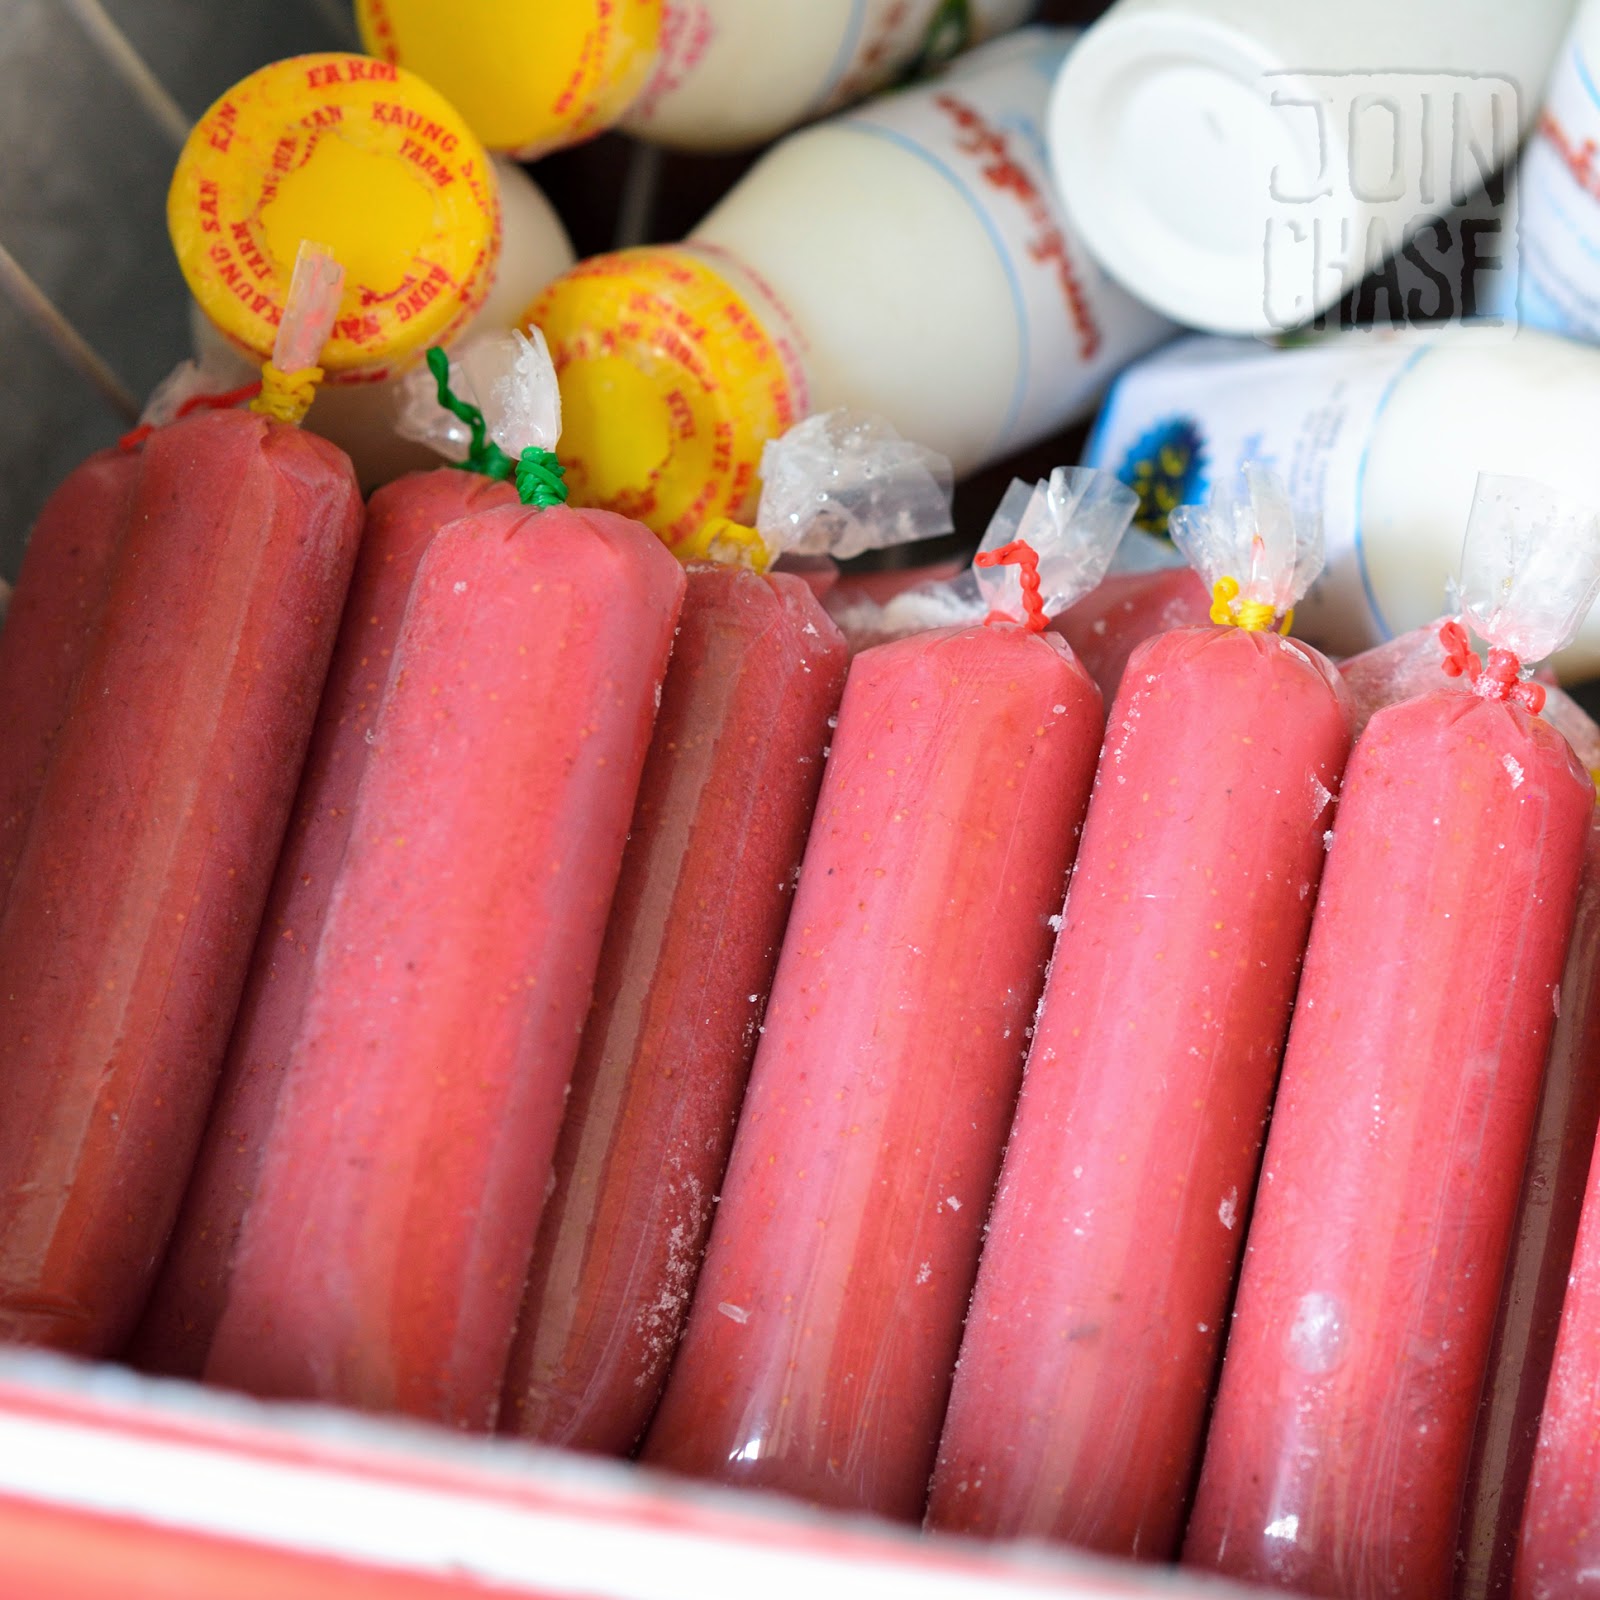 Frozen strawberry treats for sale in Pyin Oo Lwin, Myanmar. 